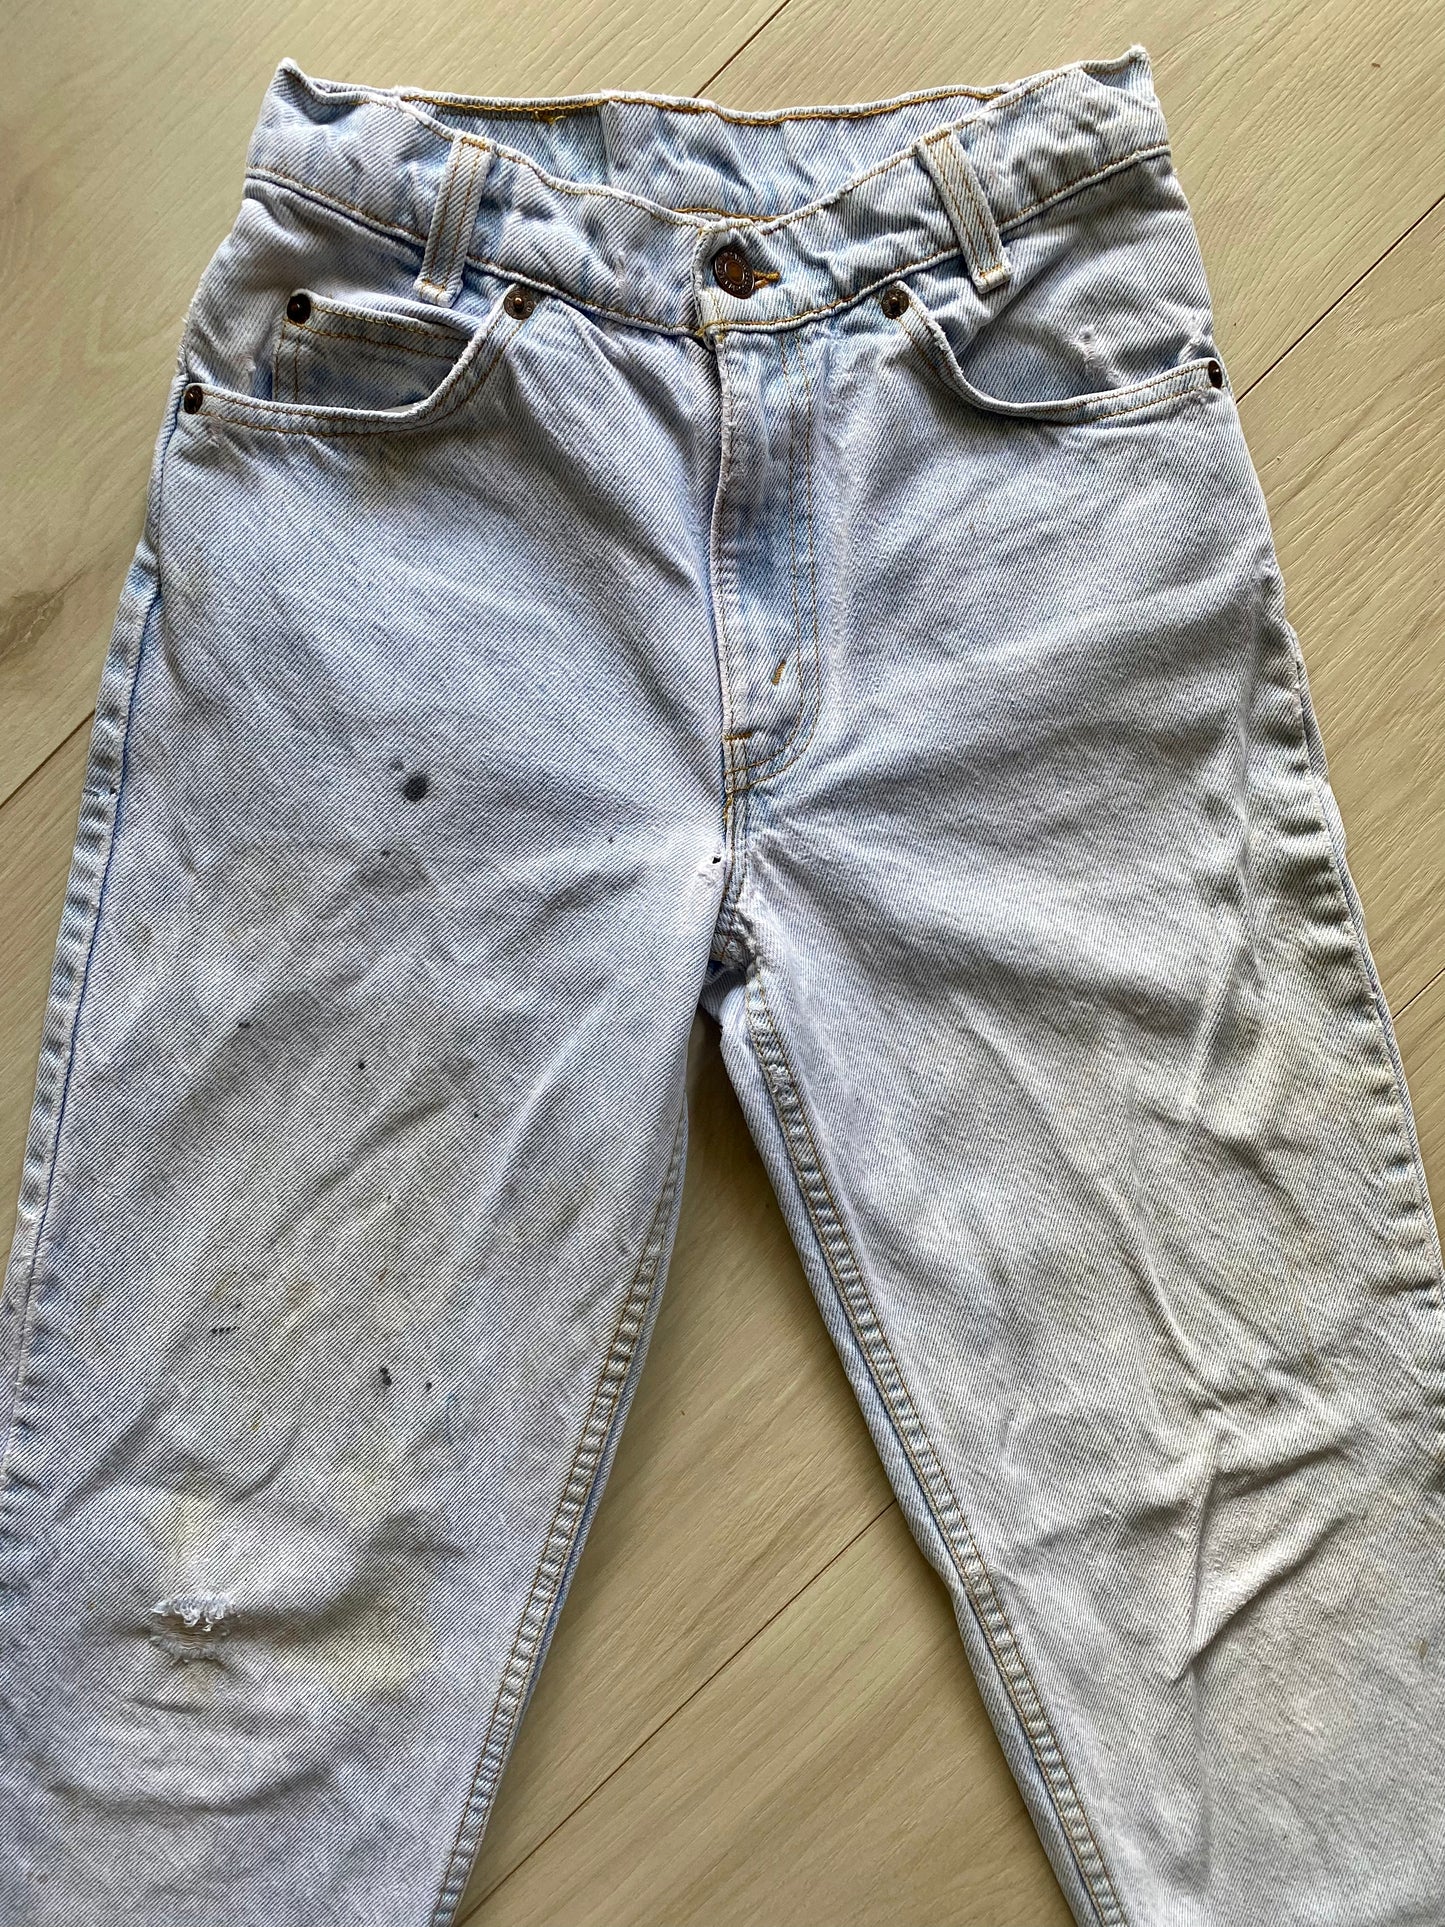 Size 23/24 Levi’s 550 jeans